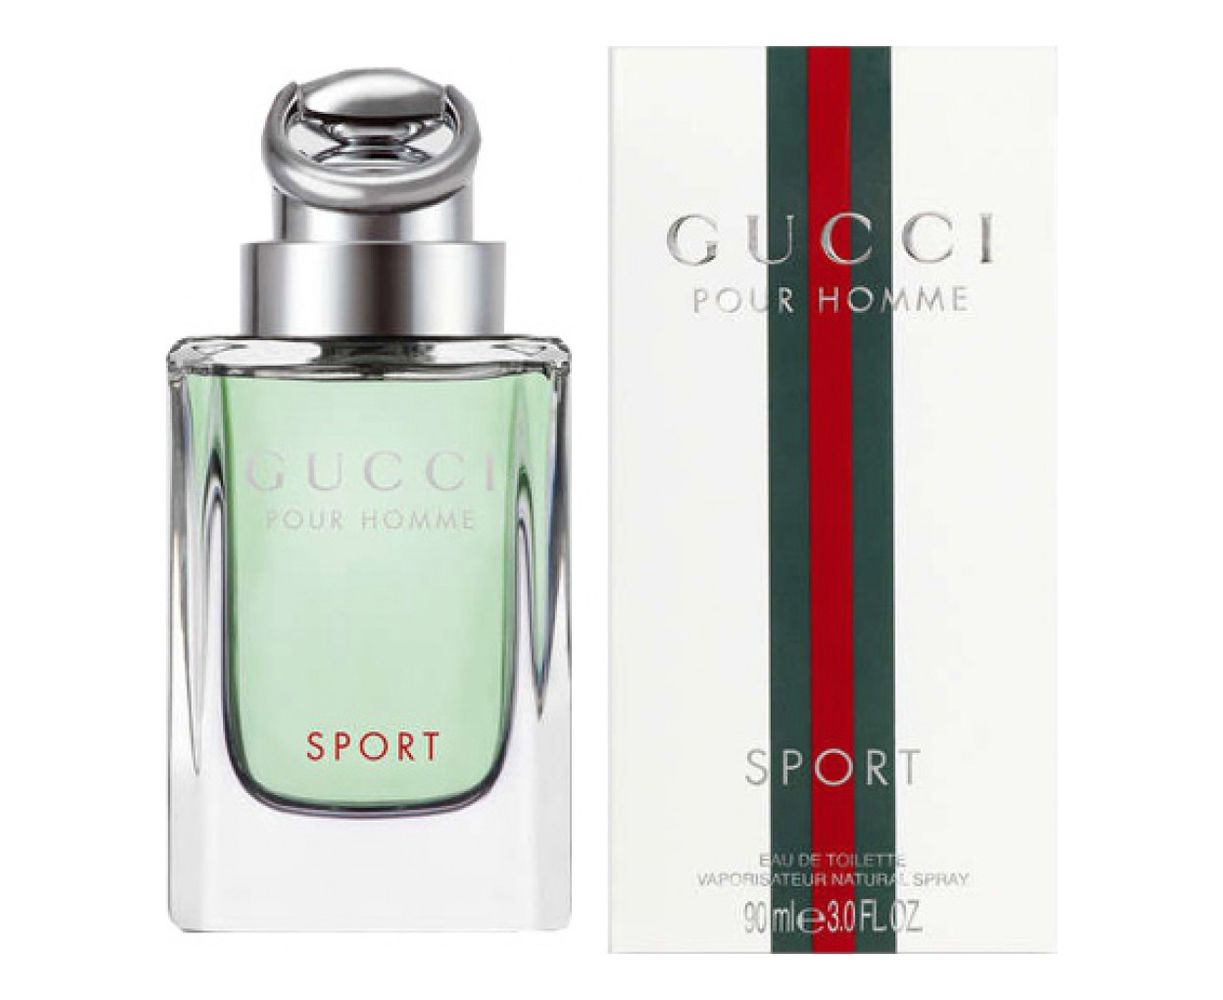 Pour homme sport. Gucci "Gucci by Gucci pour homme". Gucci by Gucci Sport pour homme. Gucci by Gucci Sport pour homme EDT 30ml Travel Spray. Gucci homme Sport мужские.